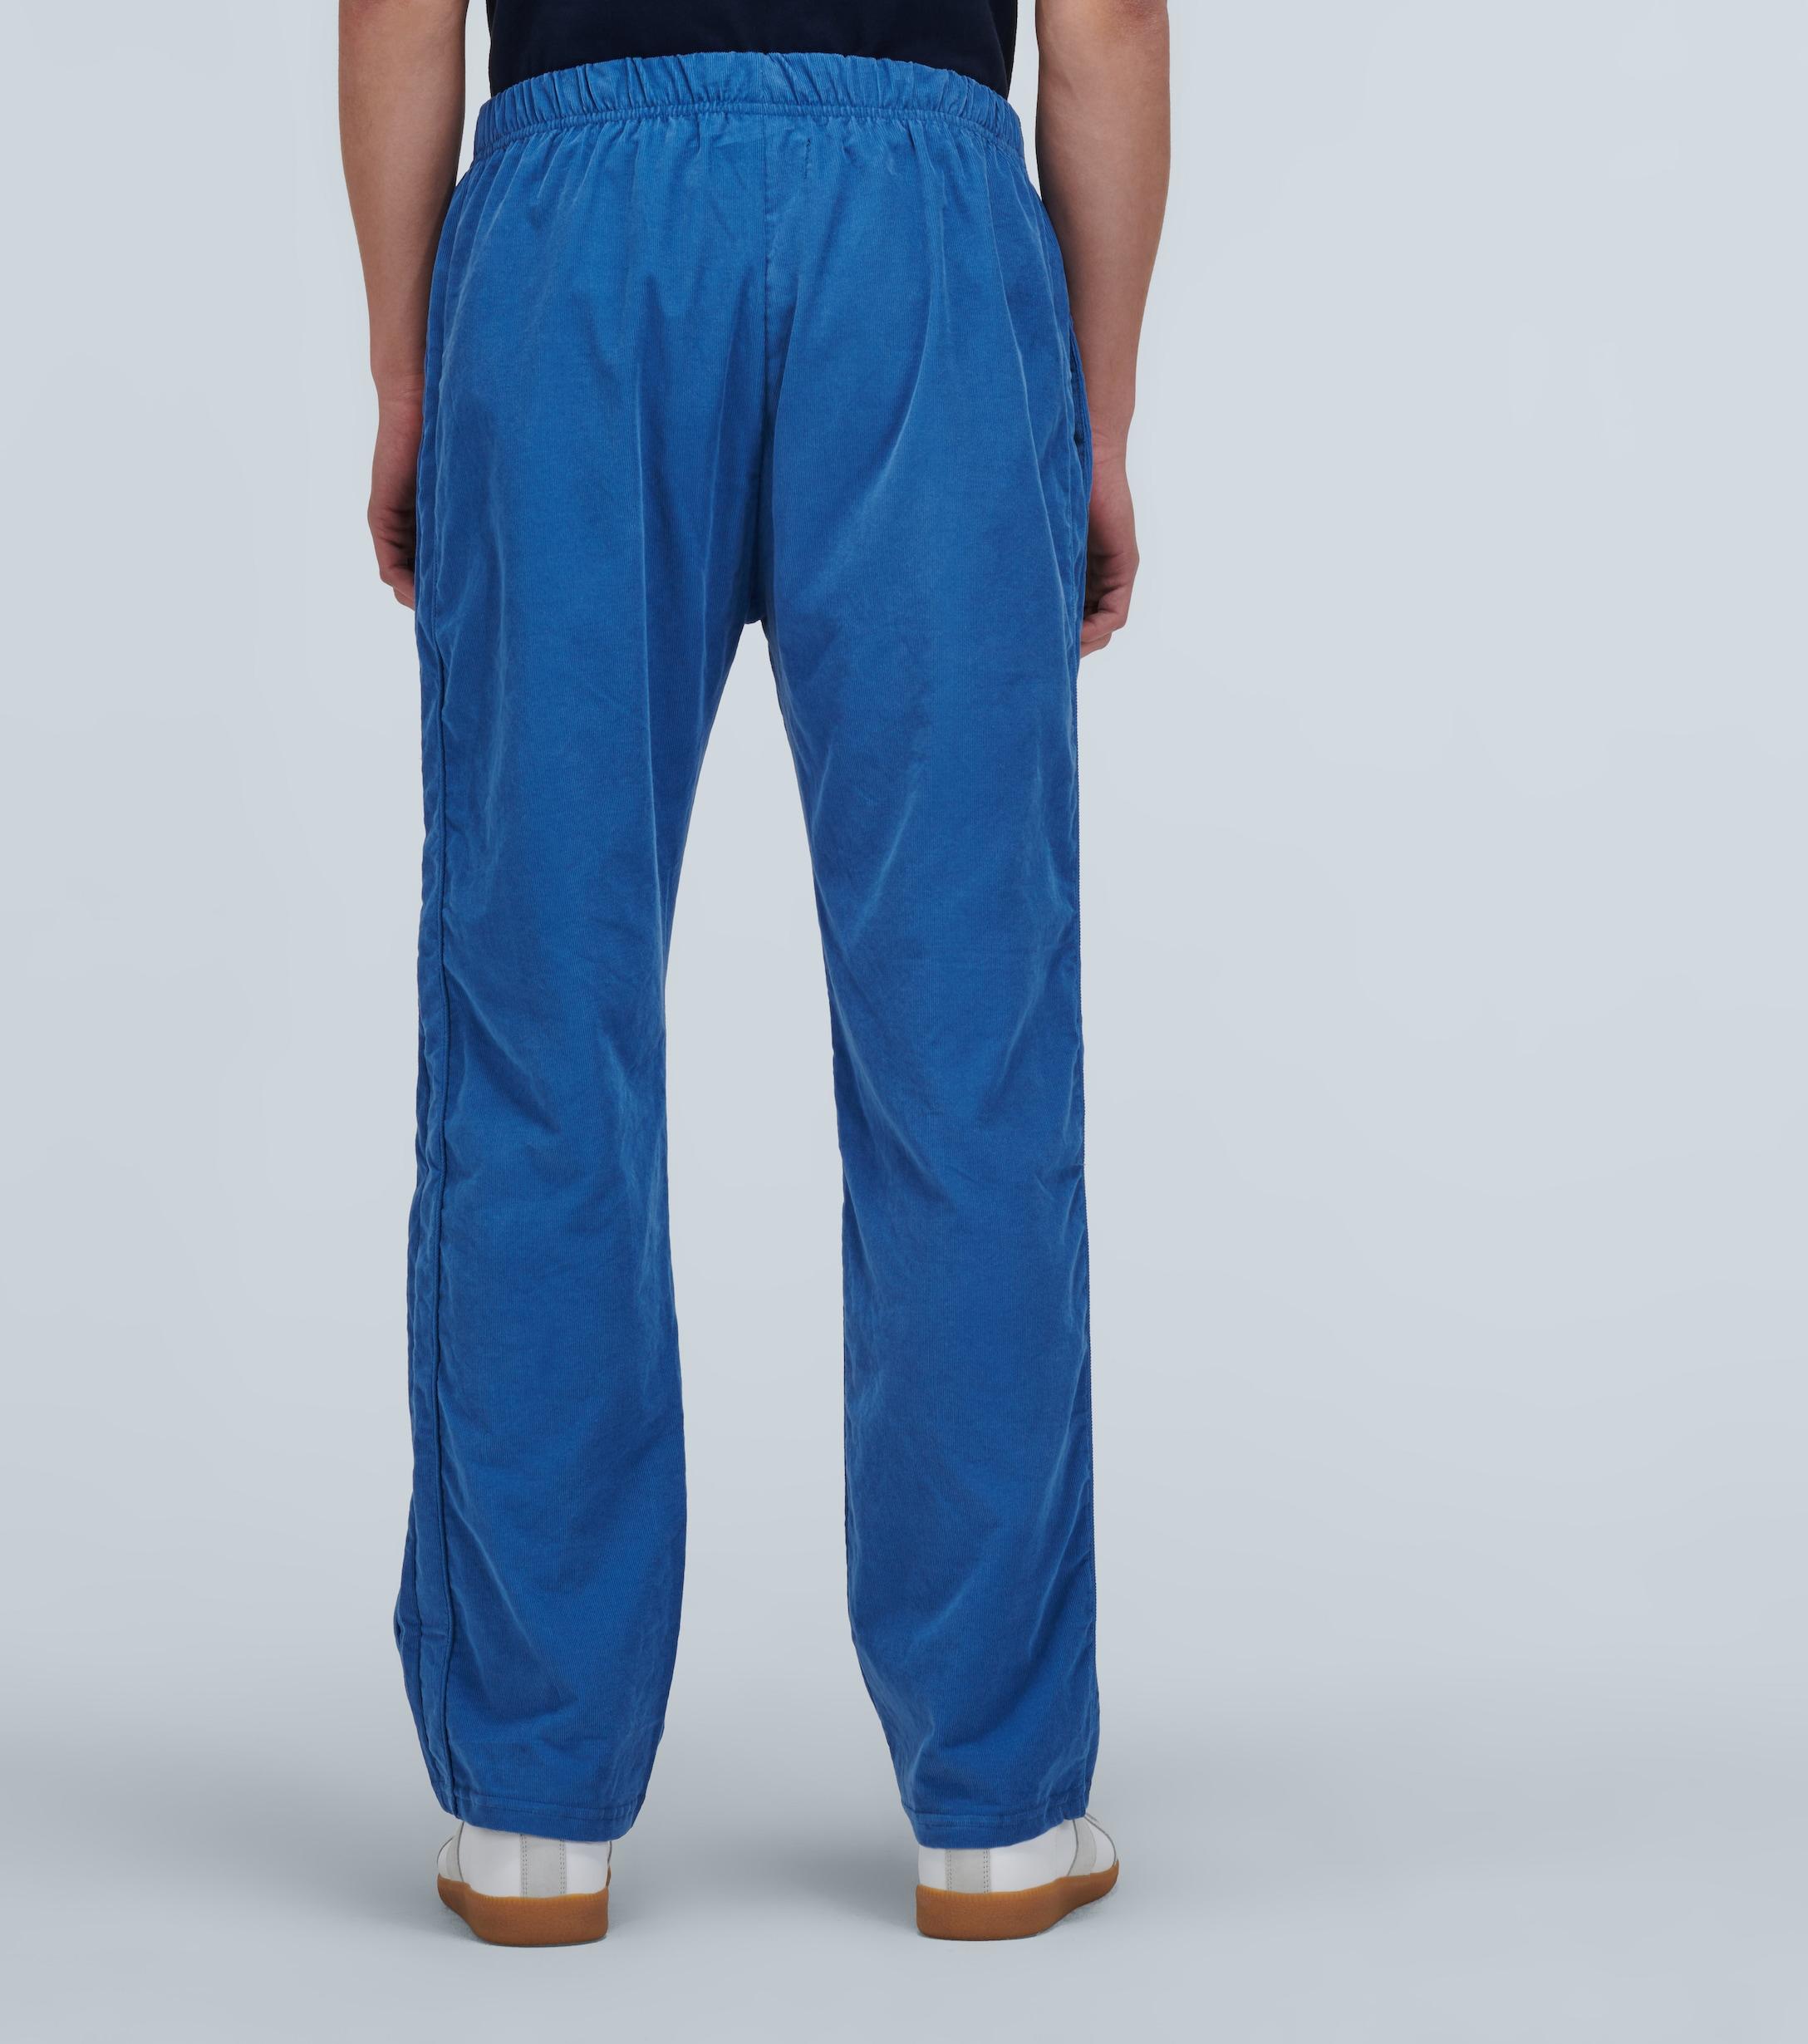 Les Tien Corduroy Cotton Pants in Blue for Men - Lyst